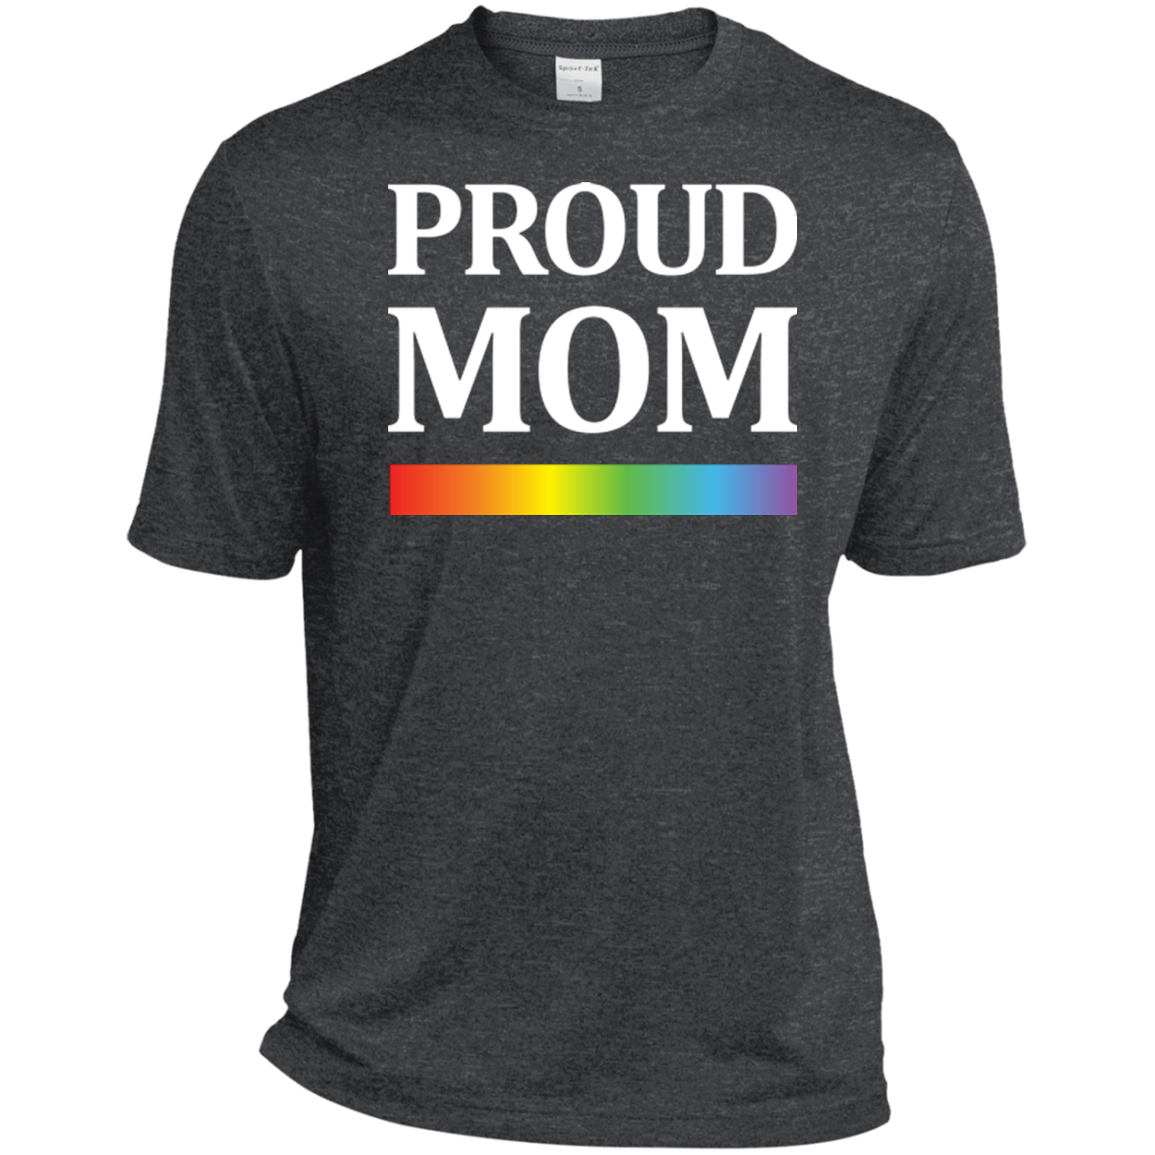 LGBT Pride "Proud Mom" Grey tshirt Gay Pride shirt